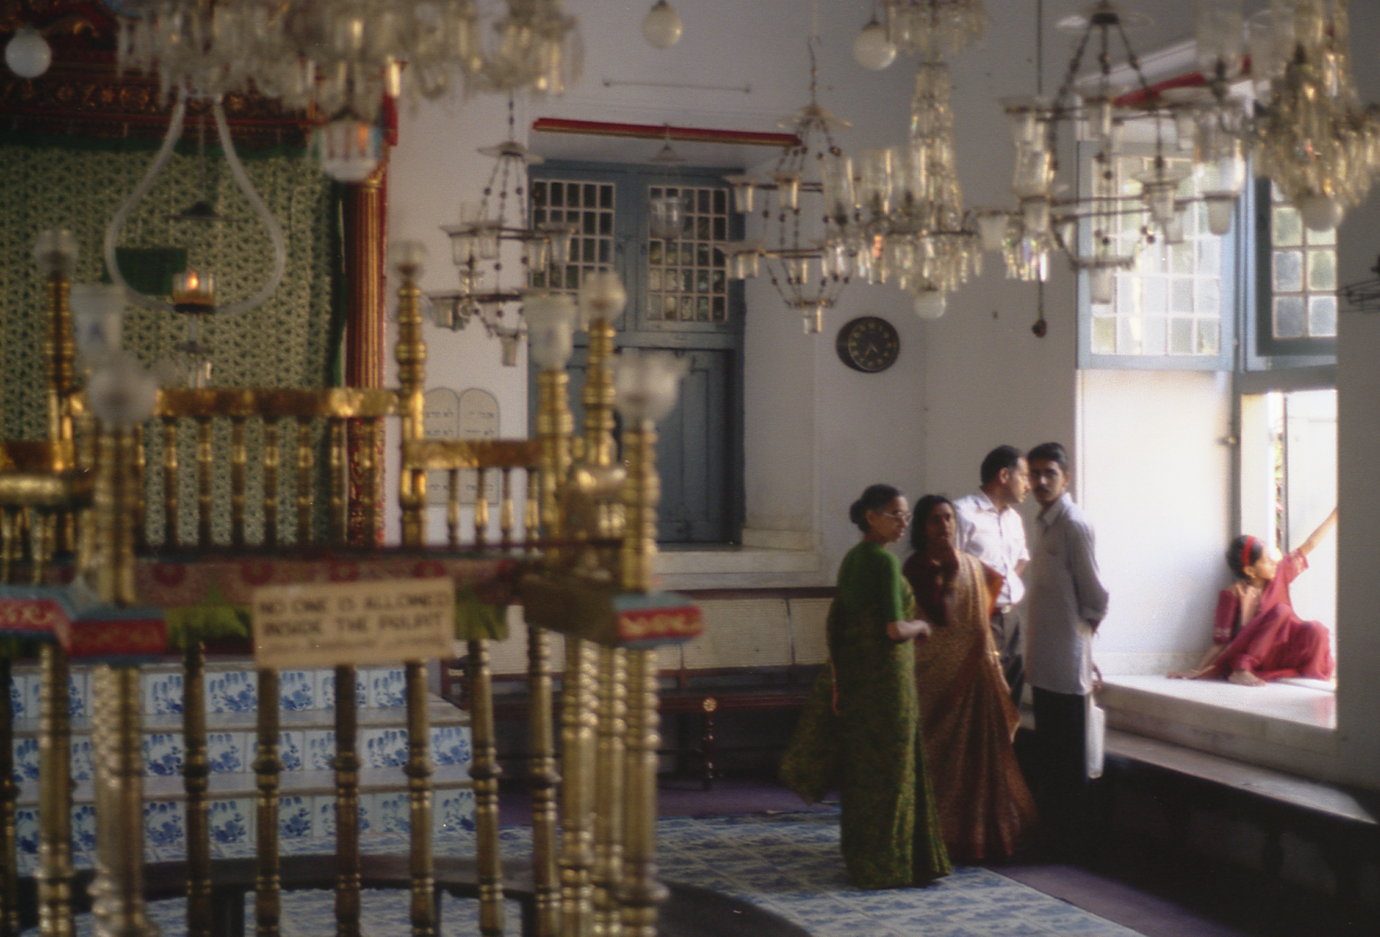 kerala-cochin-synagogue.jpg